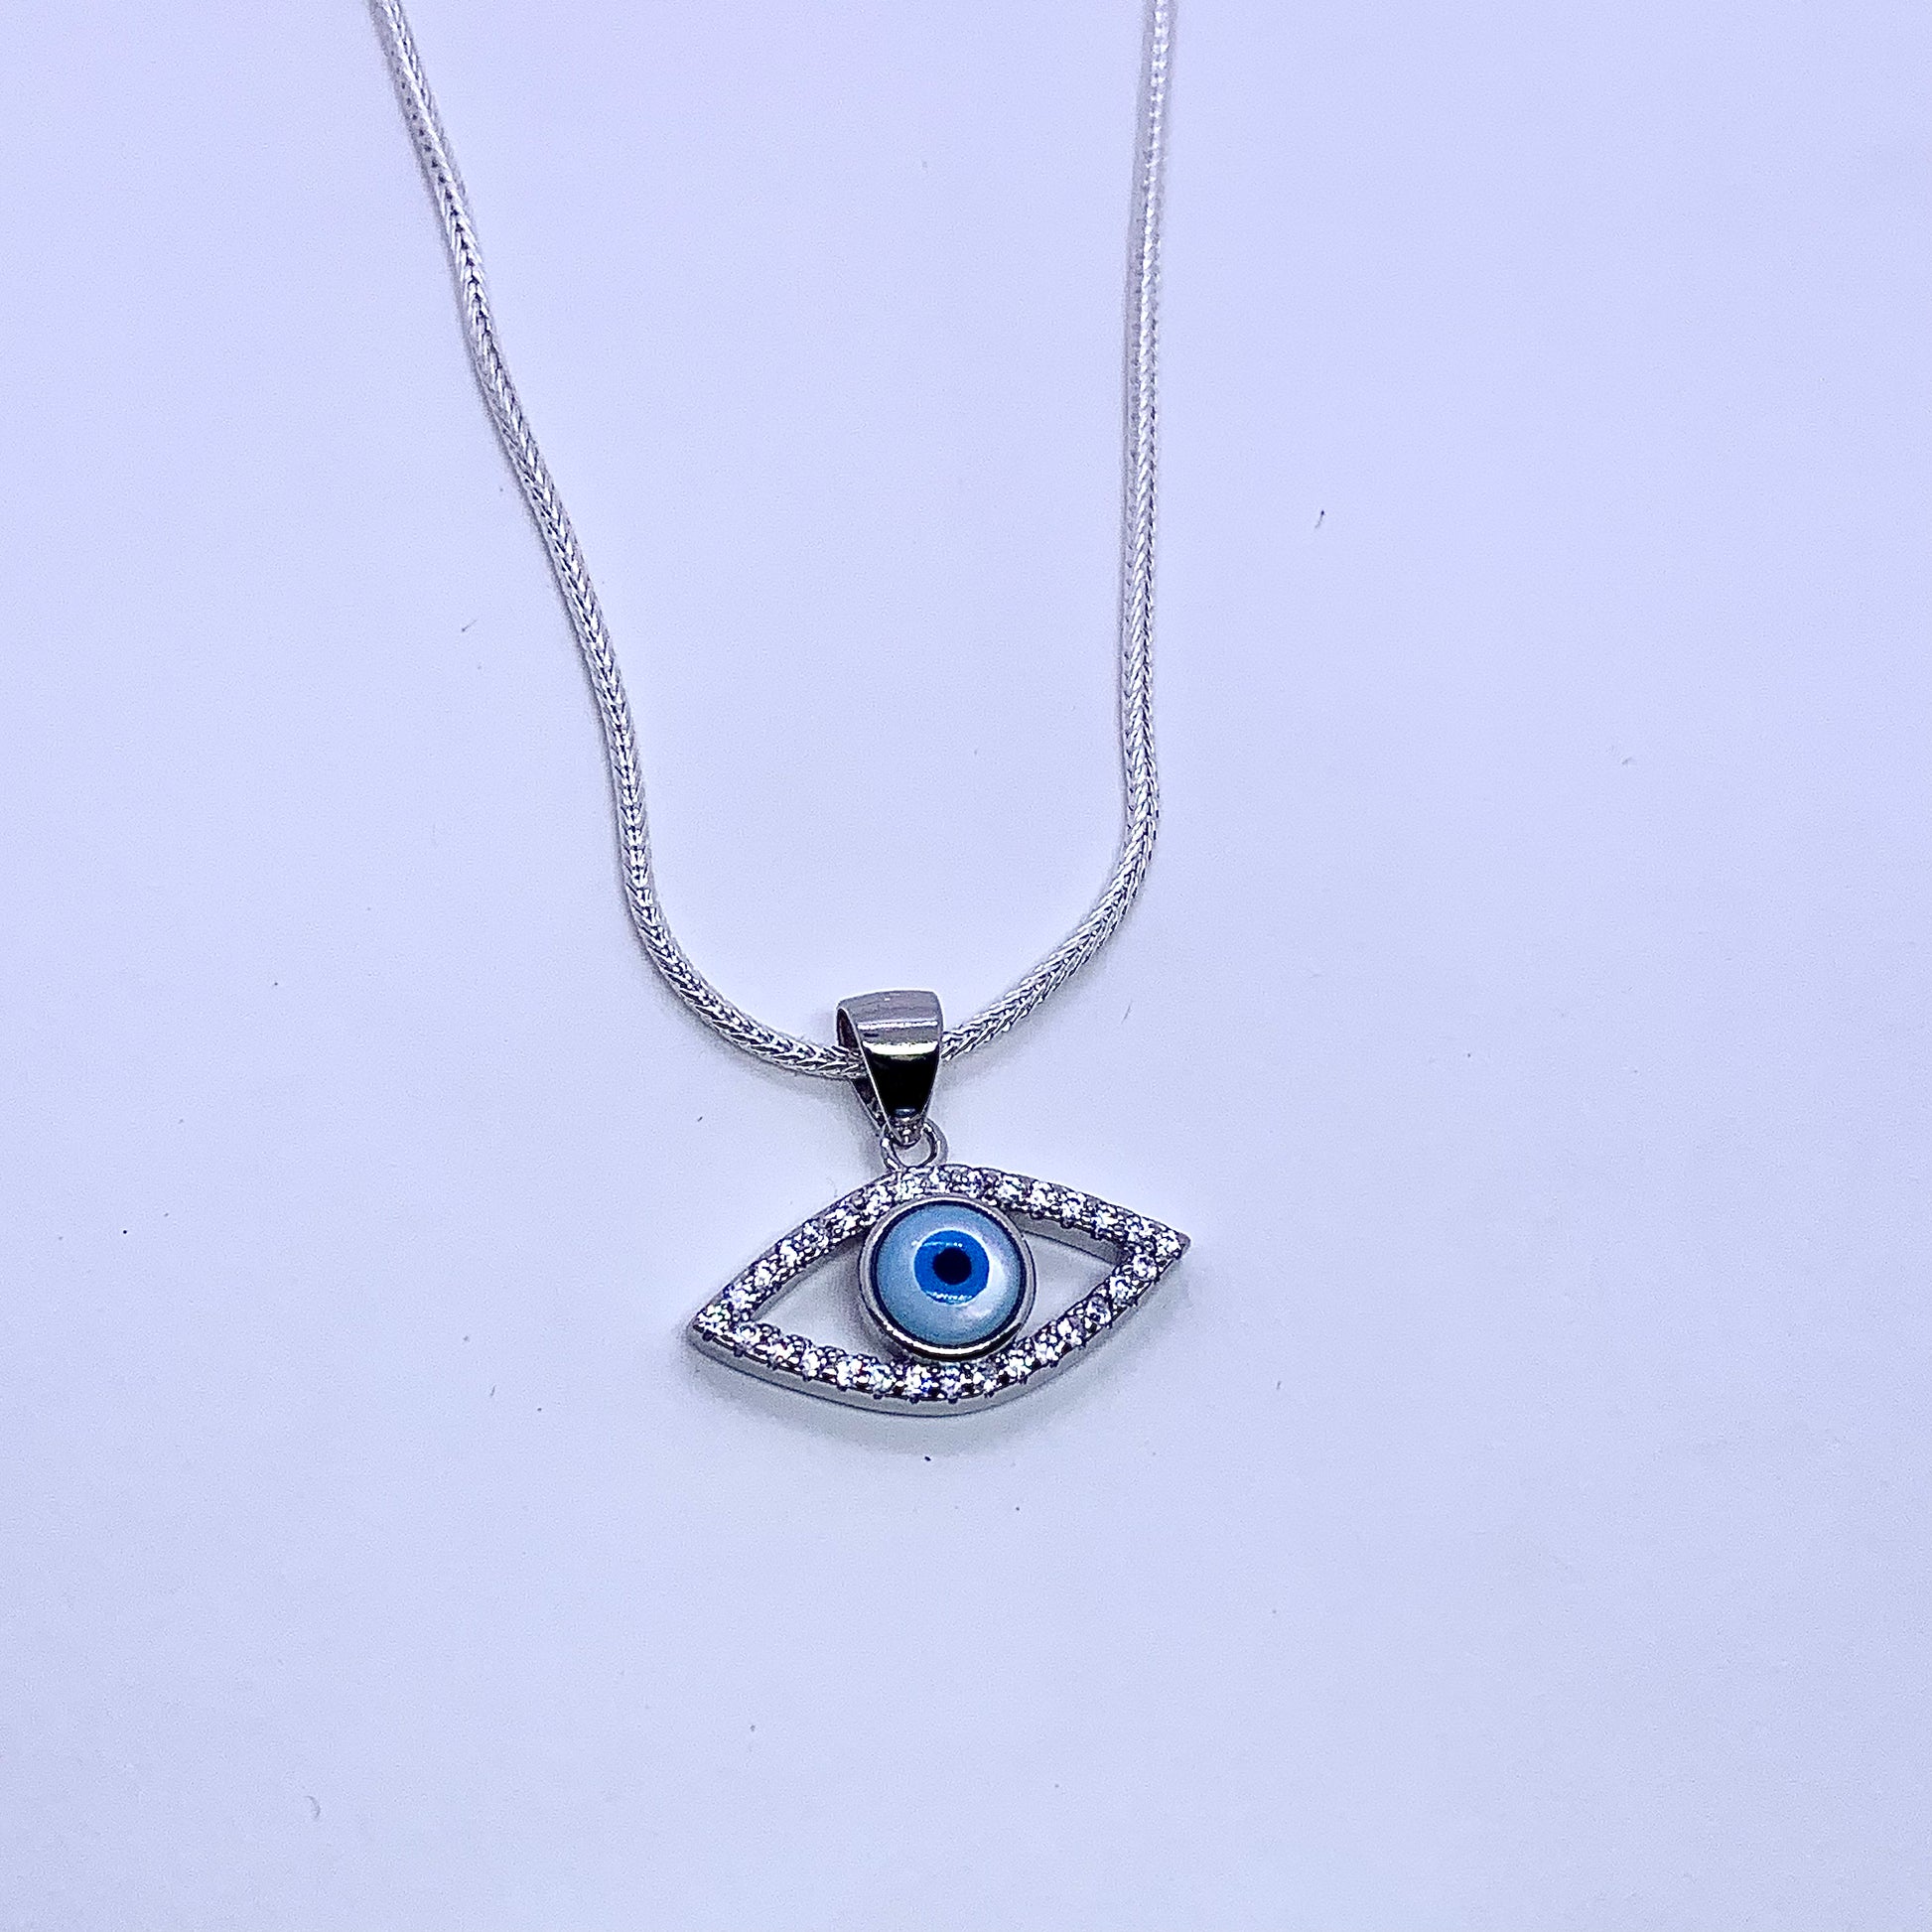 Evil Eye Necklace Pendant - Silver Jewelery 925